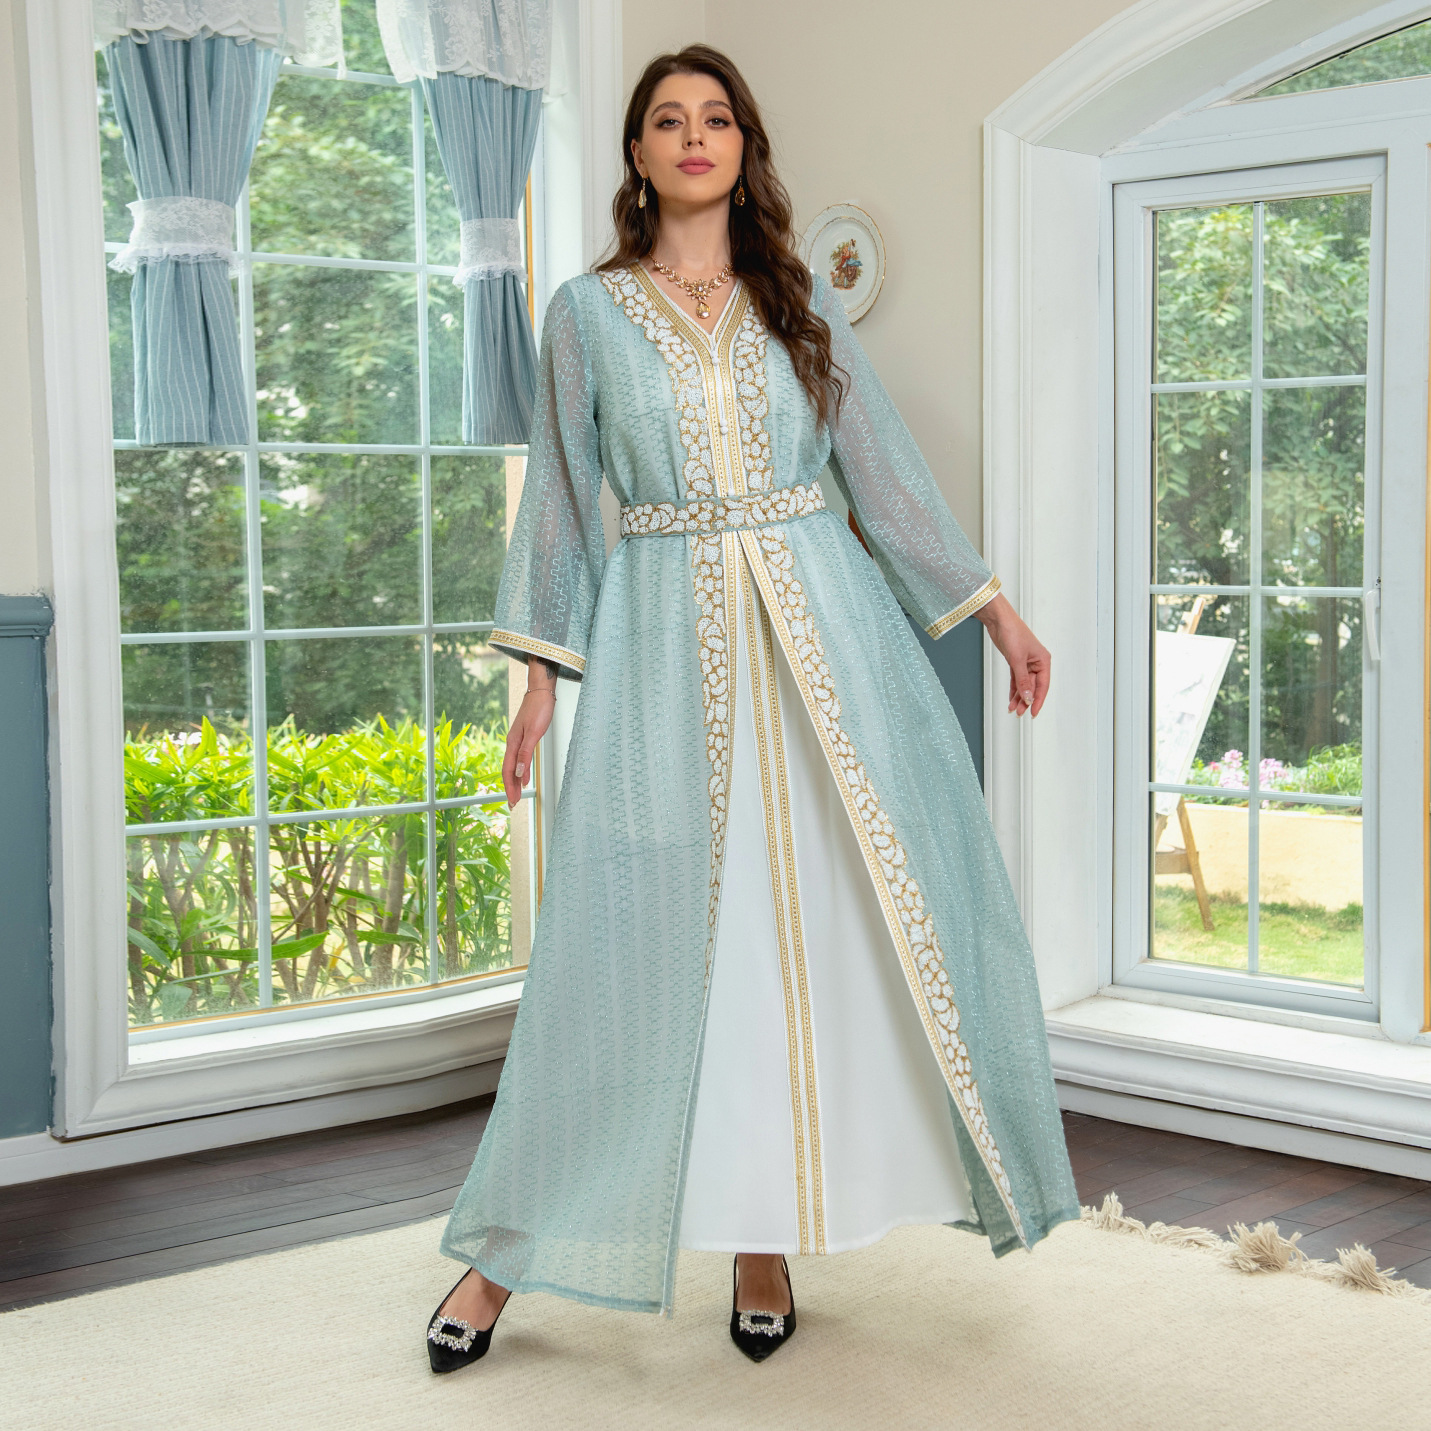 Women's Evening Dress Jalabiya Set: Embellished with Rhinestones, Exuding Luxury and Elegance